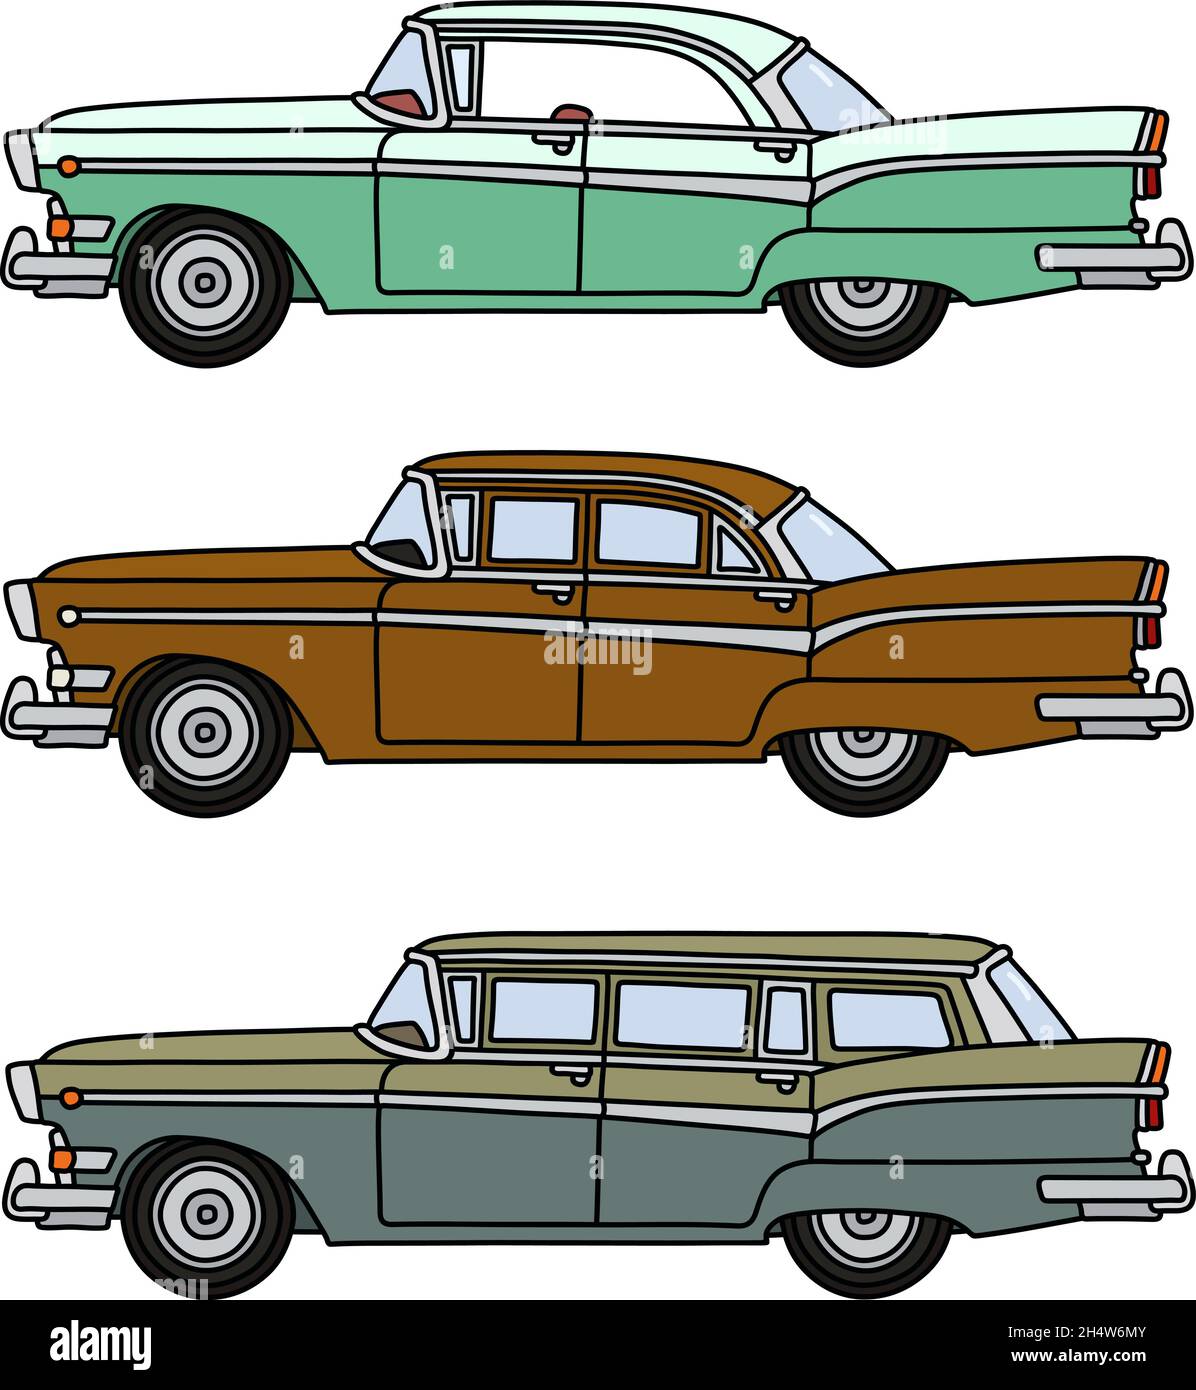 Il disegno a mano vettorizzato di tre divertenti auto vecchie e grandi americane Illustrazione Vettoriale